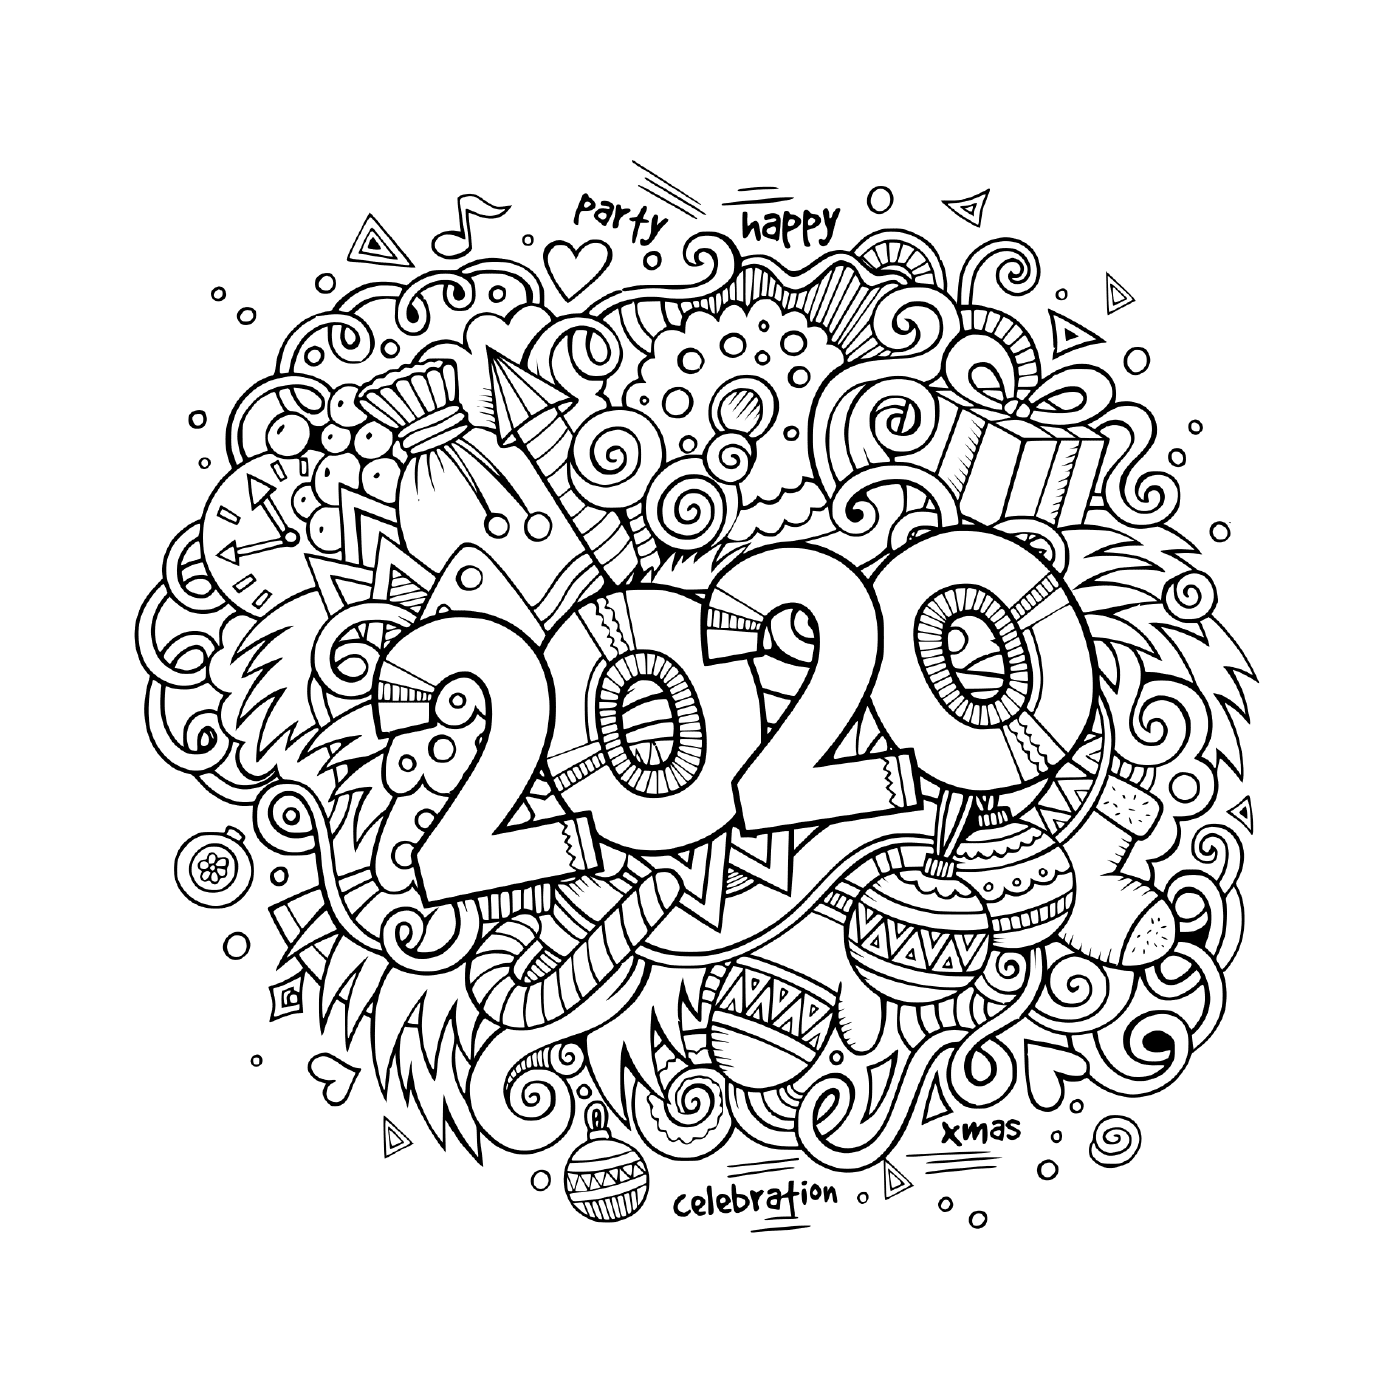   Affiche de doodles, objets et éléments pour le nouvel an 2020 